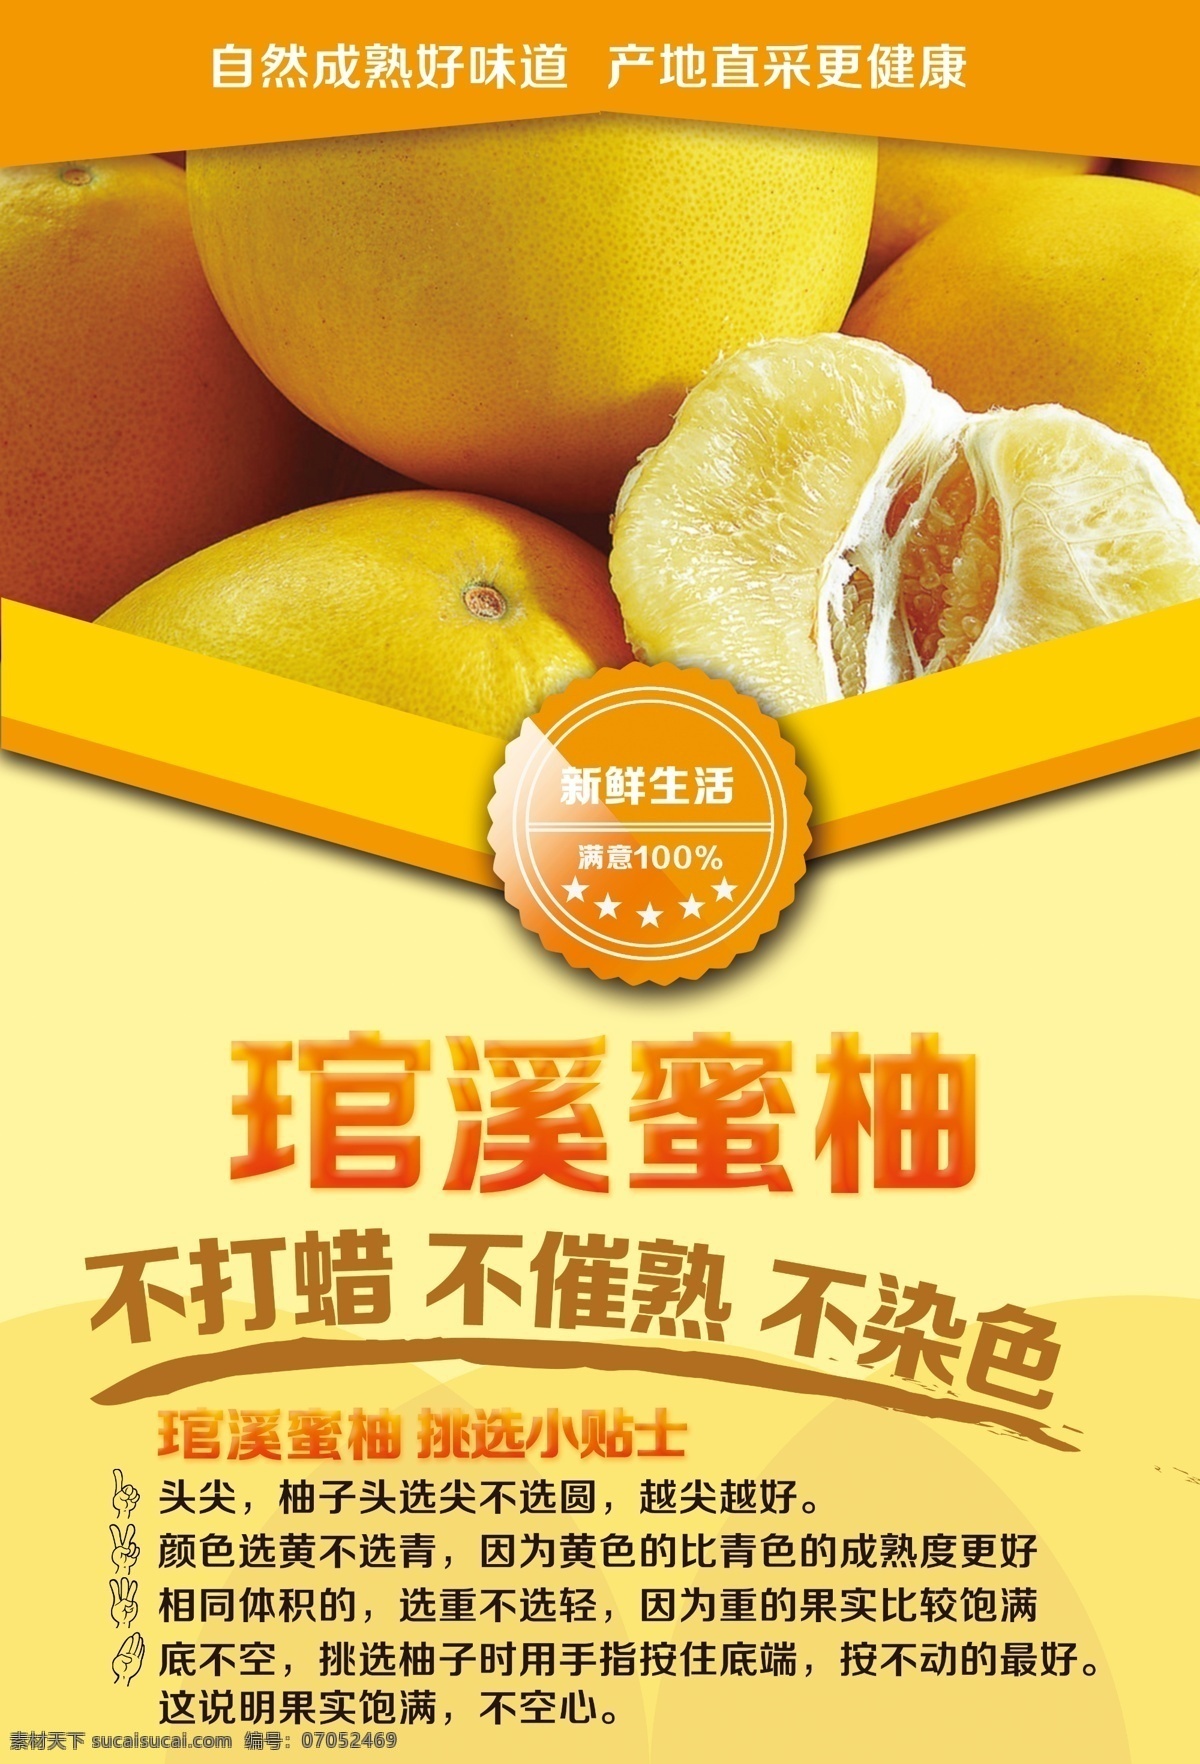 柚子pop 蜜柚 海报 超市 黄色 版式 广告设计模板 源文件